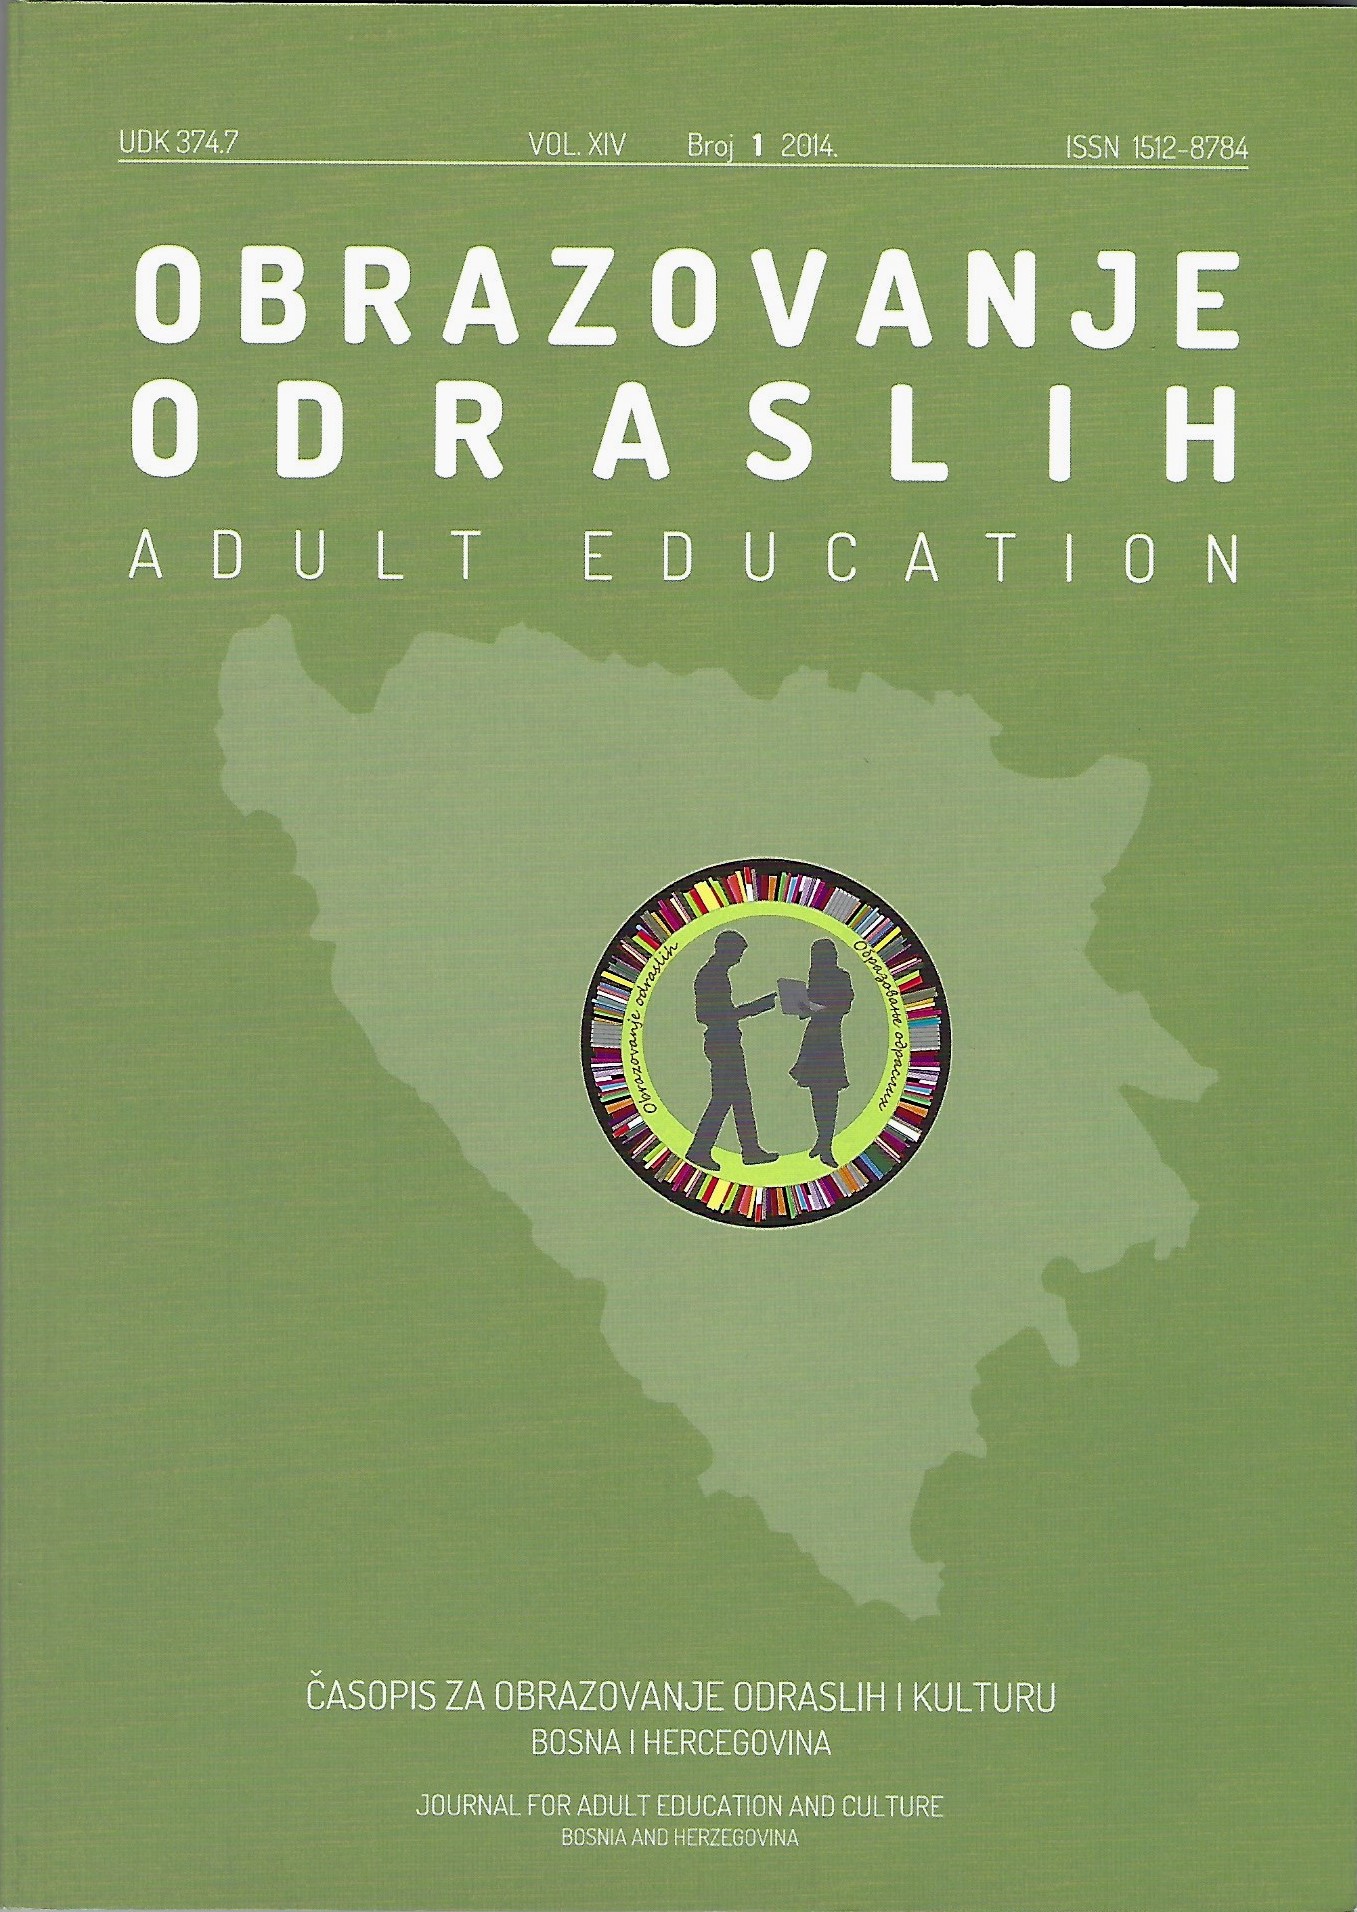 Mogućnosti bosanskohercegovačkih online medija u informiranju i edukaciji o euroatlanskim integracijama